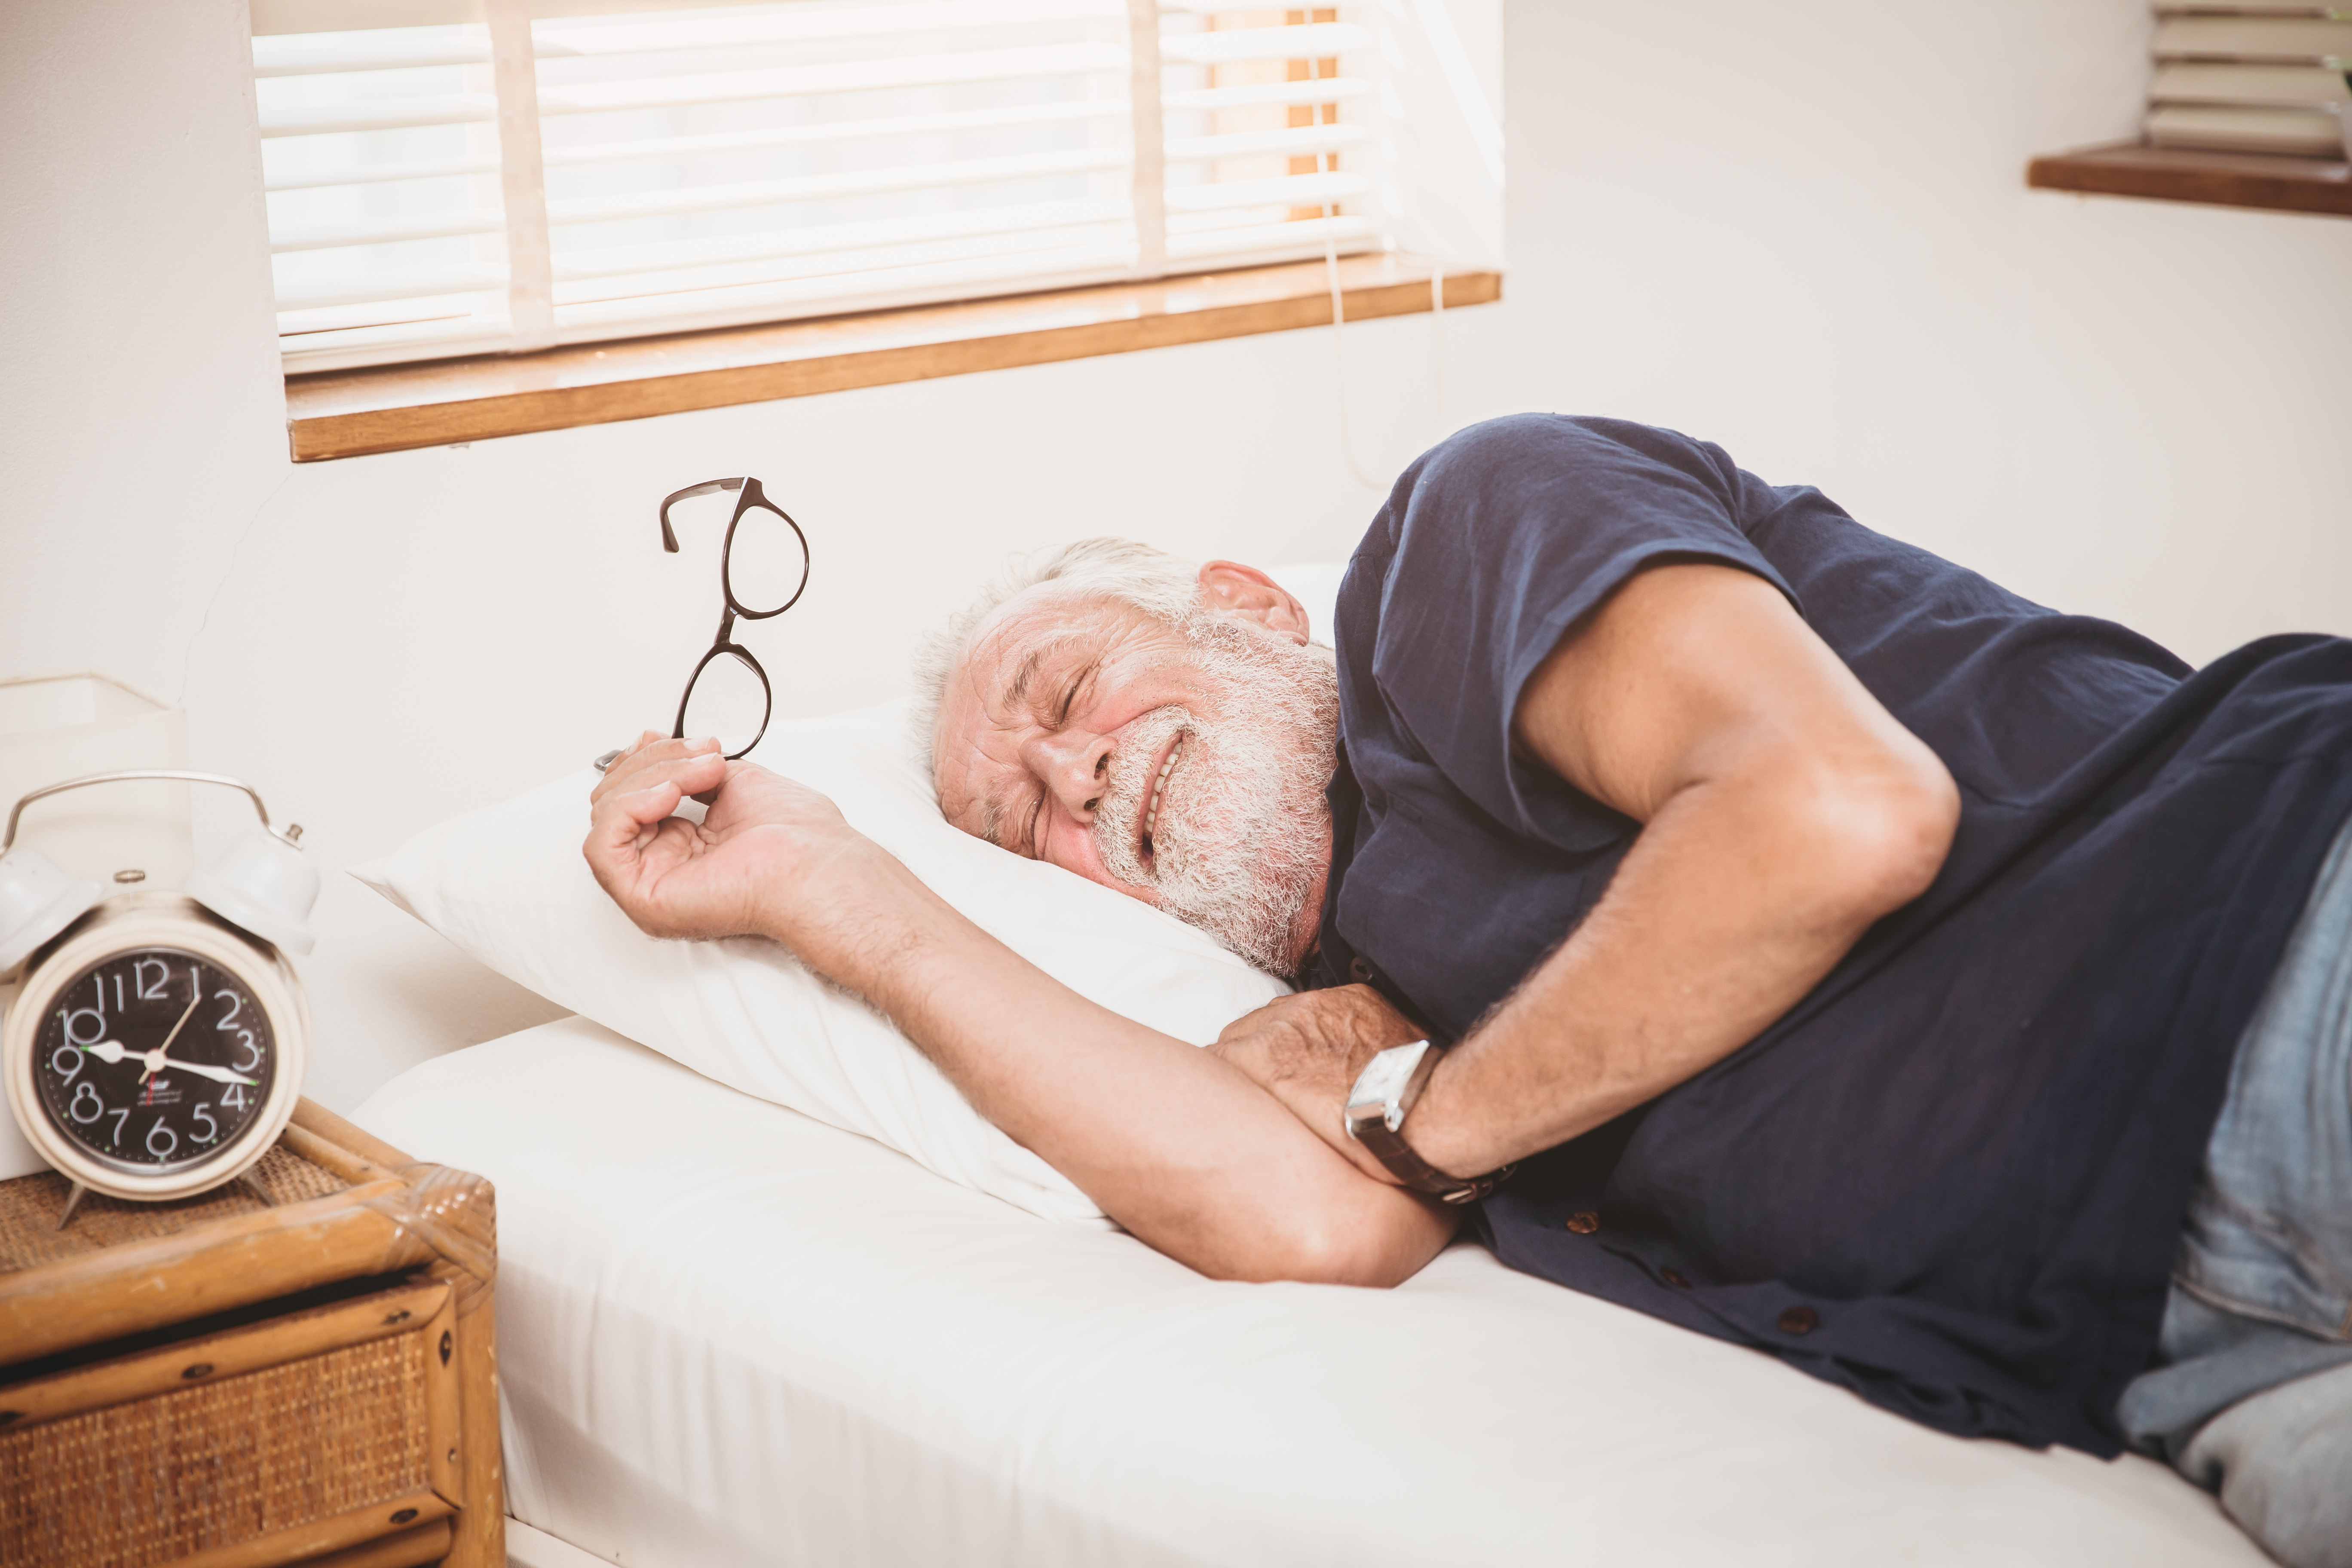 Il existe une forte association entre une sieste régulière et un risque nettement plus élevé d’HTA mais également d'accident vasculaire cérébral (AVC) (Visuel Adobe Stock 336154070).